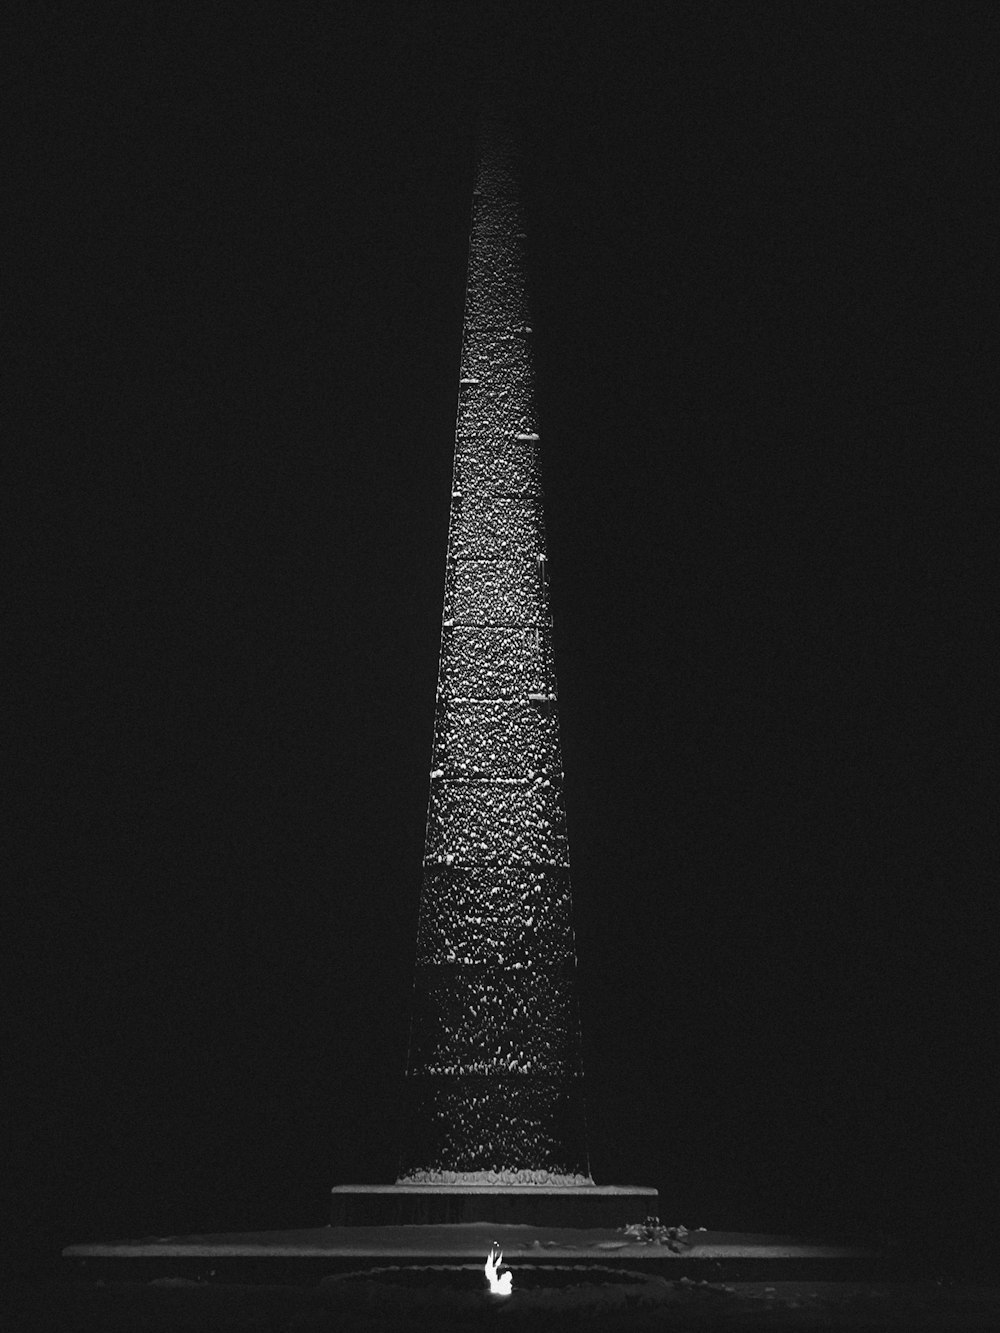 키 큰 오벨리스크의 흑백 사진